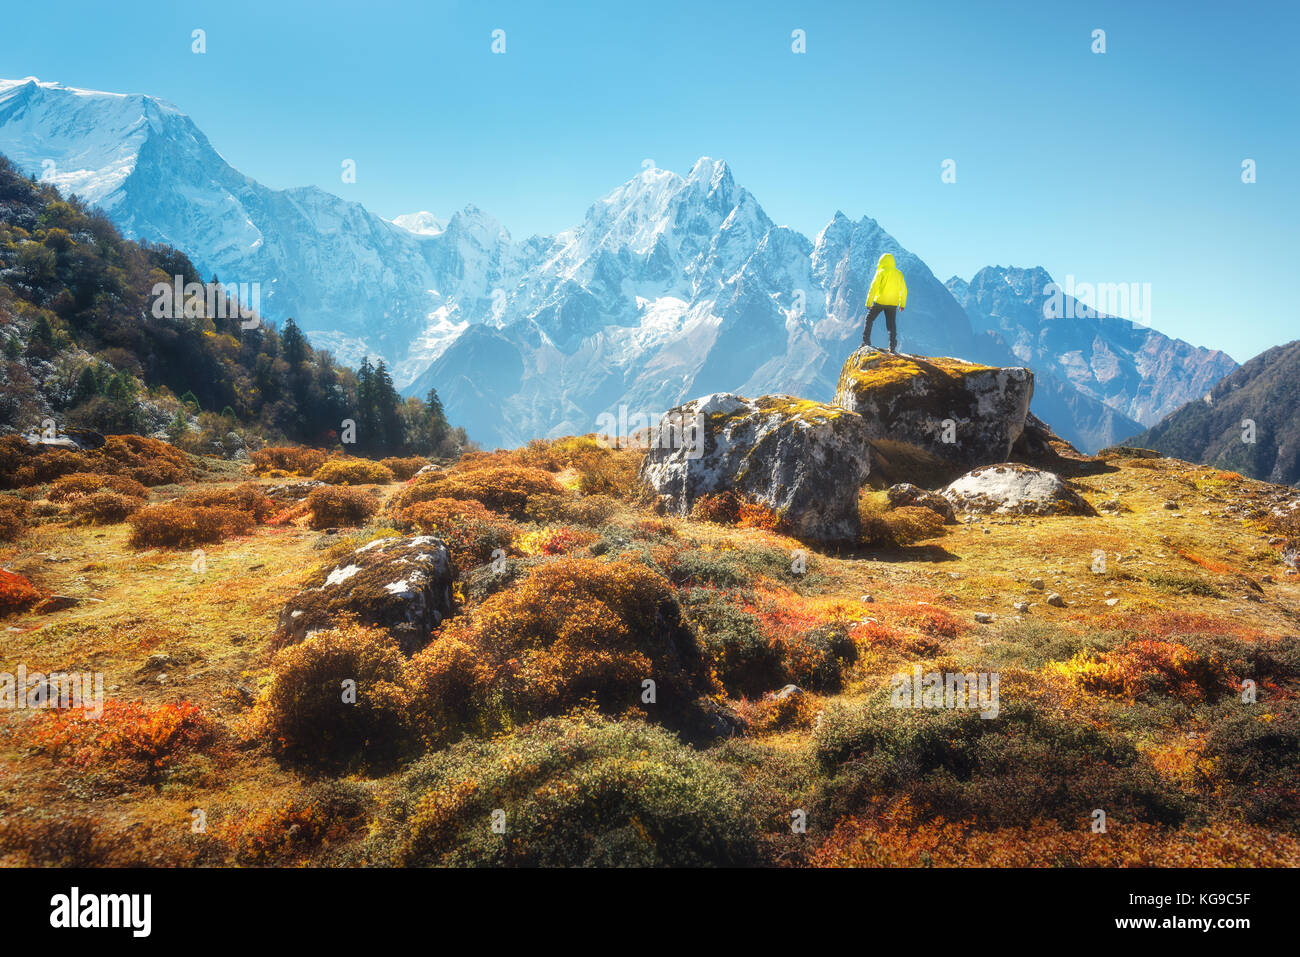 Homme debout sur la pierre et à la recherche sur de superbes montagnes de l'himalaya. Paysage avec d'agrément, de hautes roches avec des sommets enneigés, de plantes, de forêt en automne je Banque D'Images